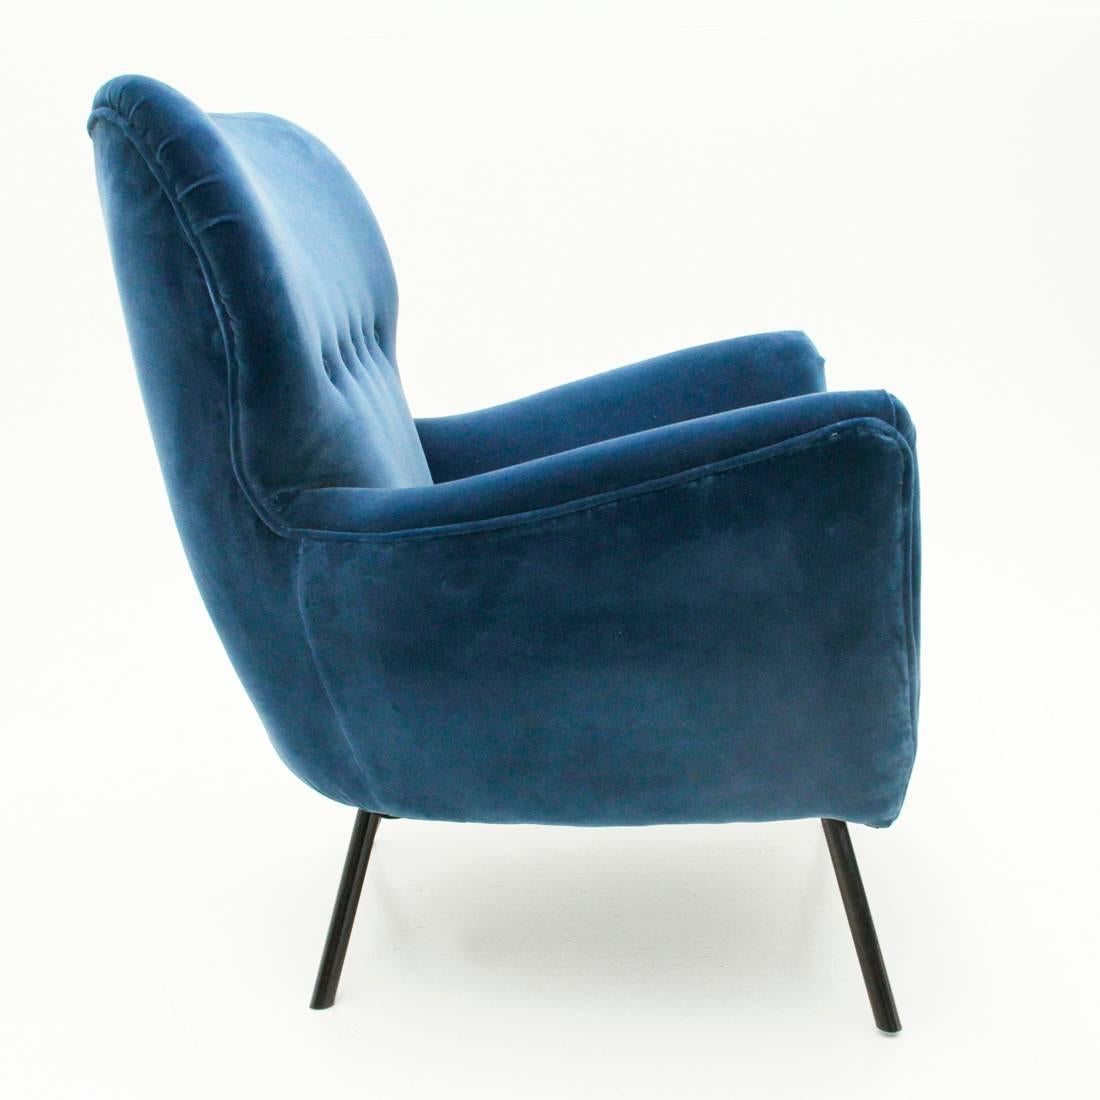 Mid-20th Century Italian Midcentury Blue Velvet Armchairs with Ottoman, 1950s